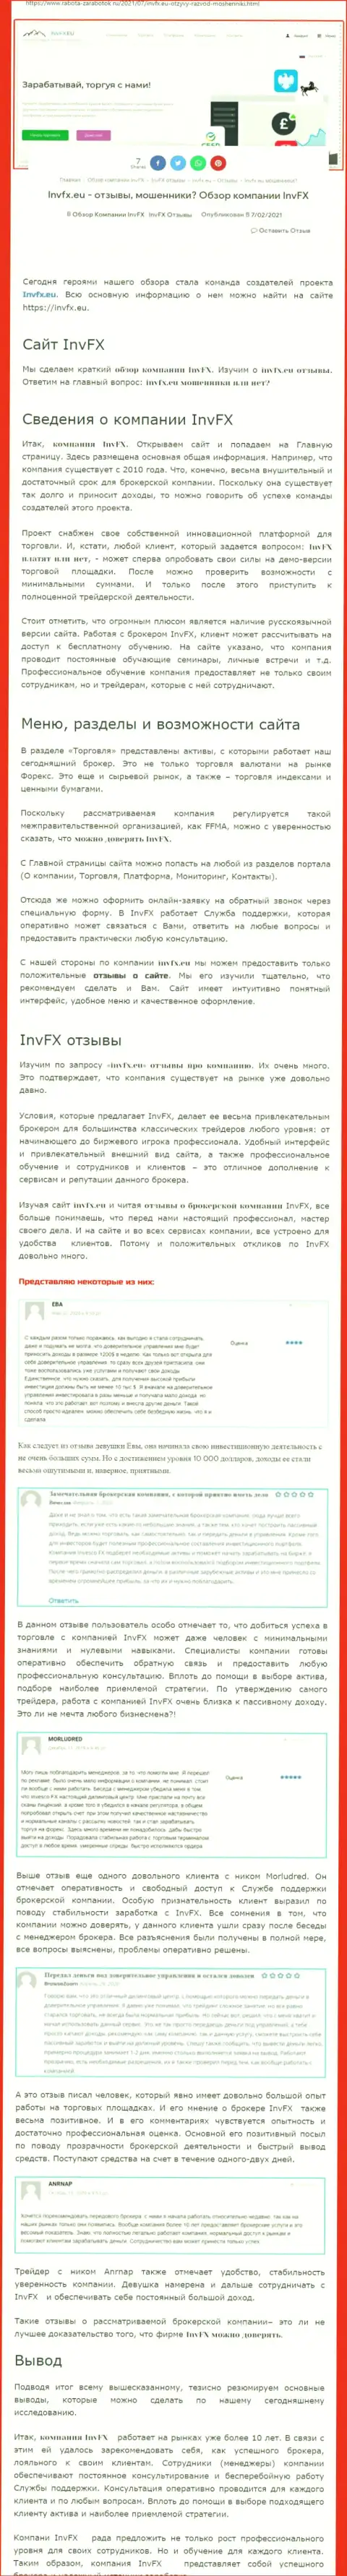 Информационный материал сайта Rabota-Zarabotok Ru об форекс организации ИНВФИкс Еу